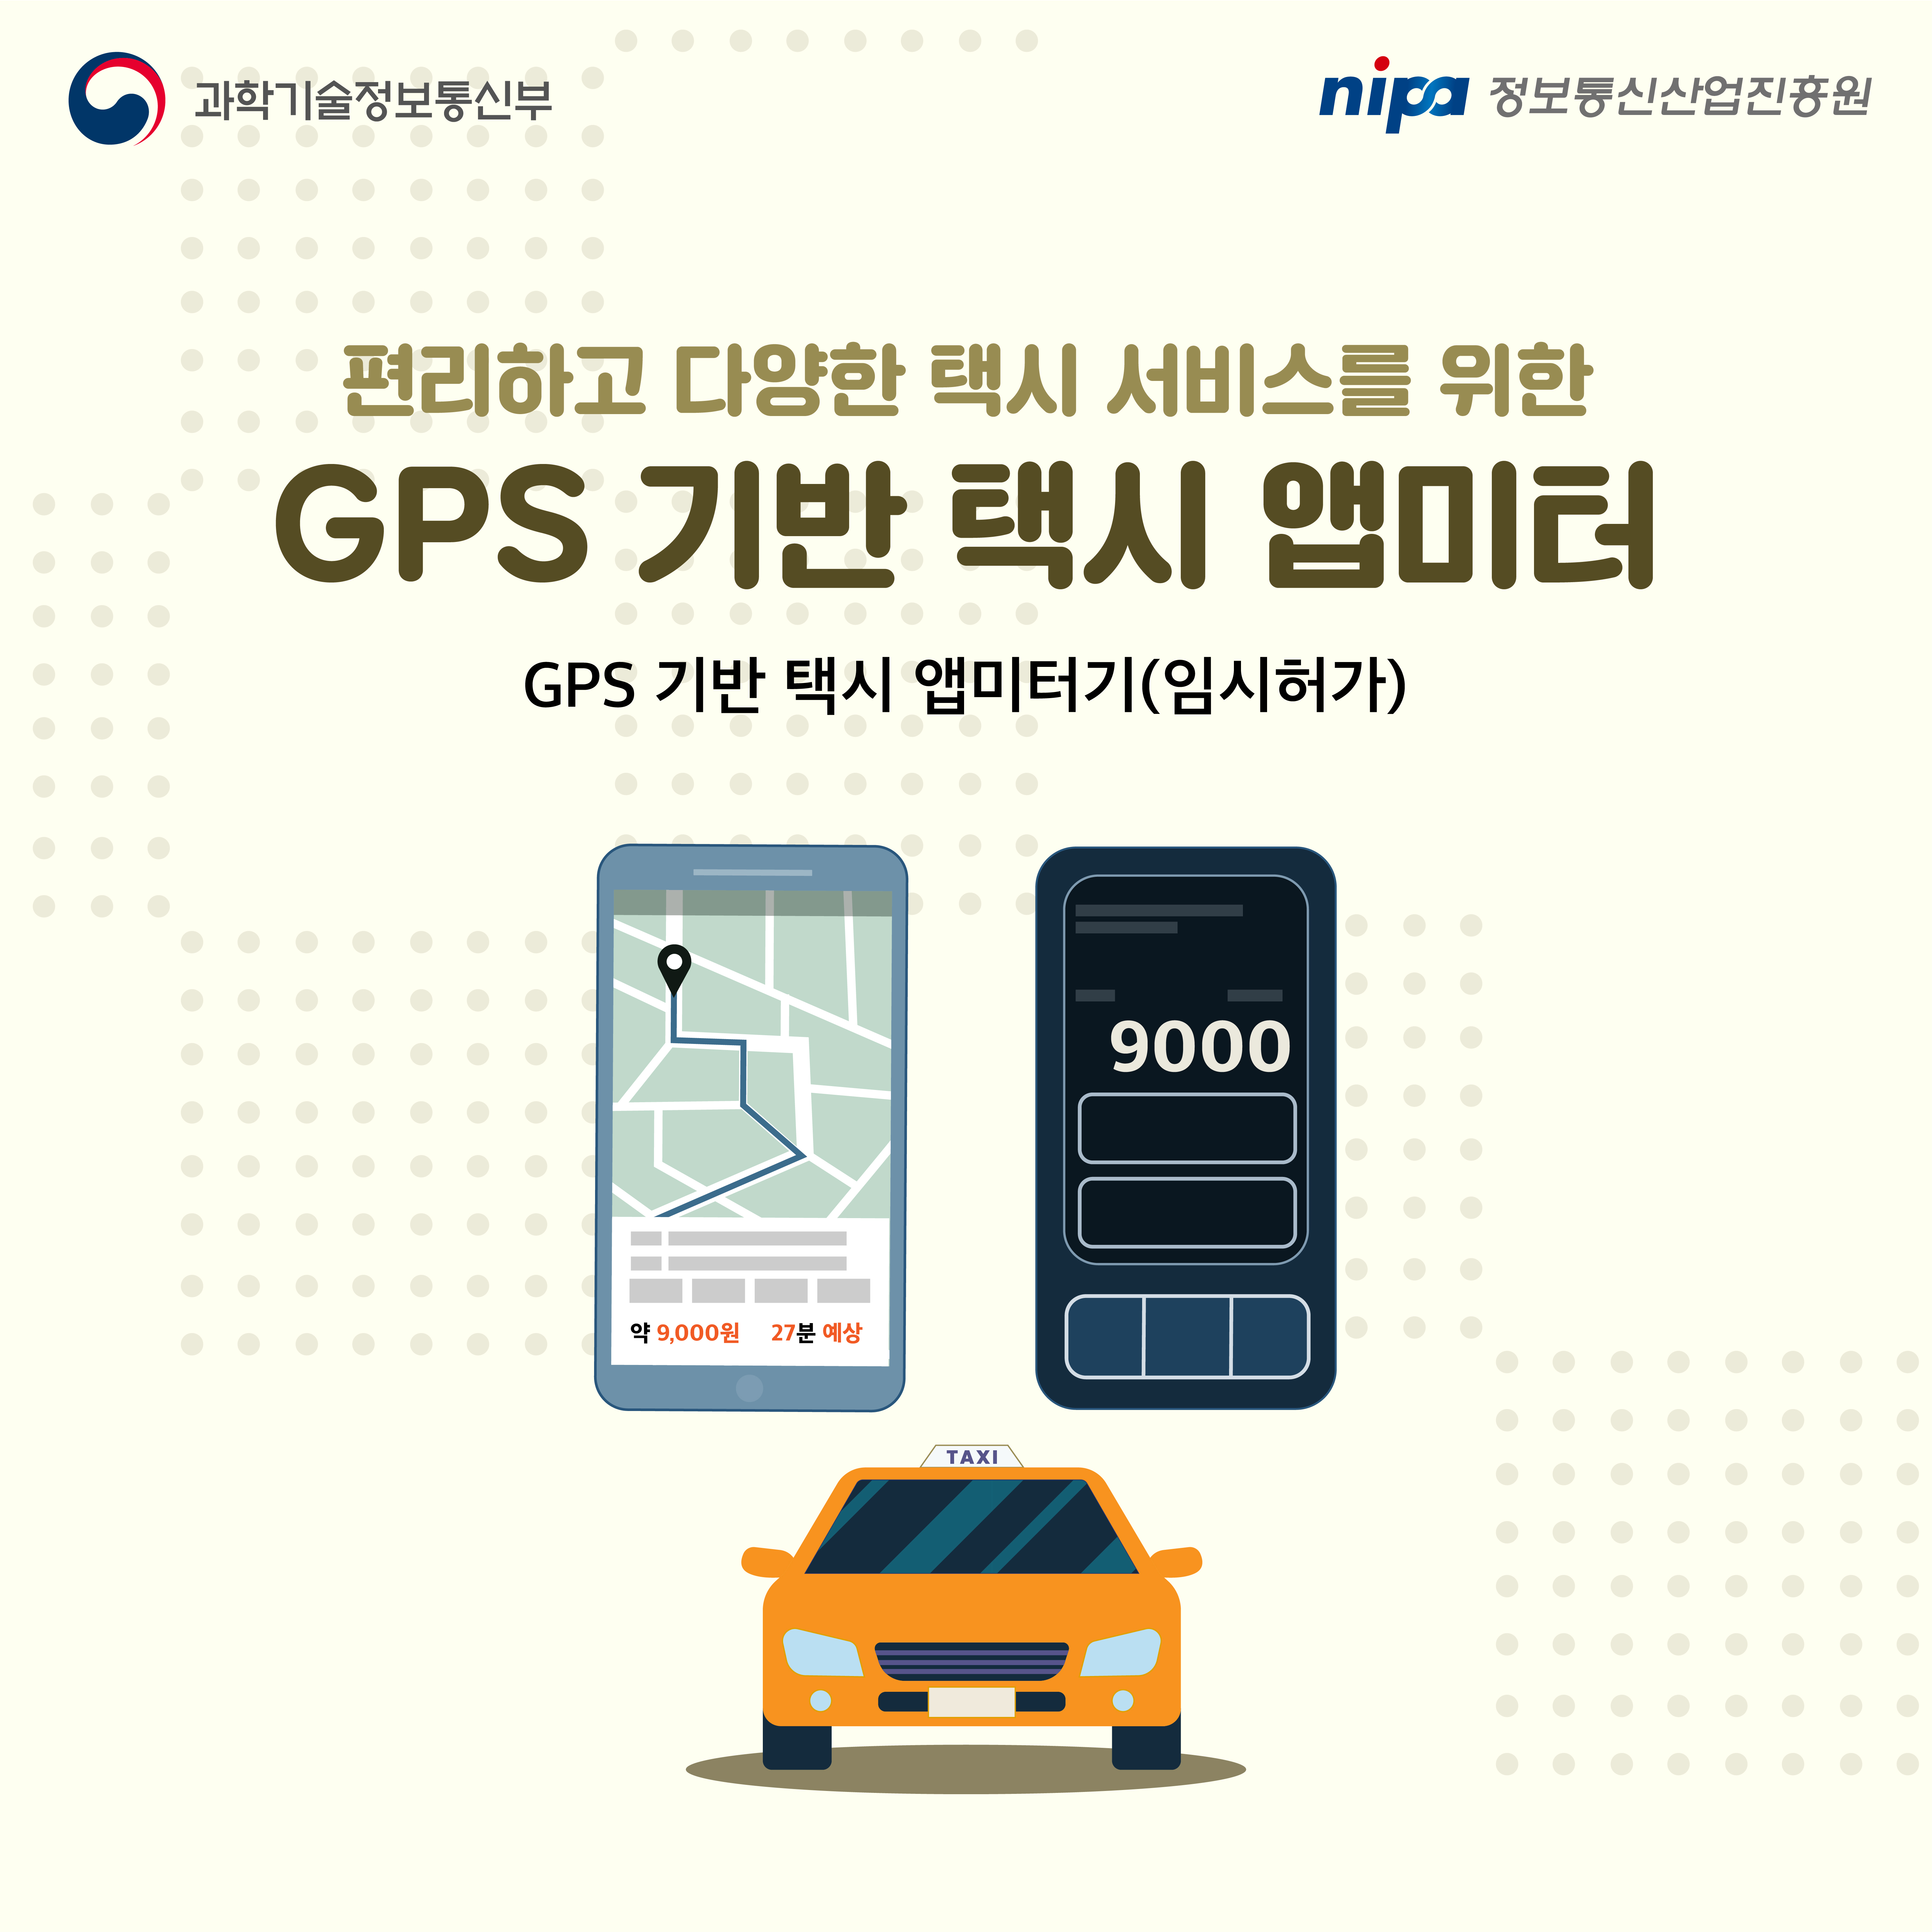 편안하고 다양한 택시 서비스를 위한 GPS 기반 택시 앱미터 GPS 기반 택시 앱미터기(임시허가)